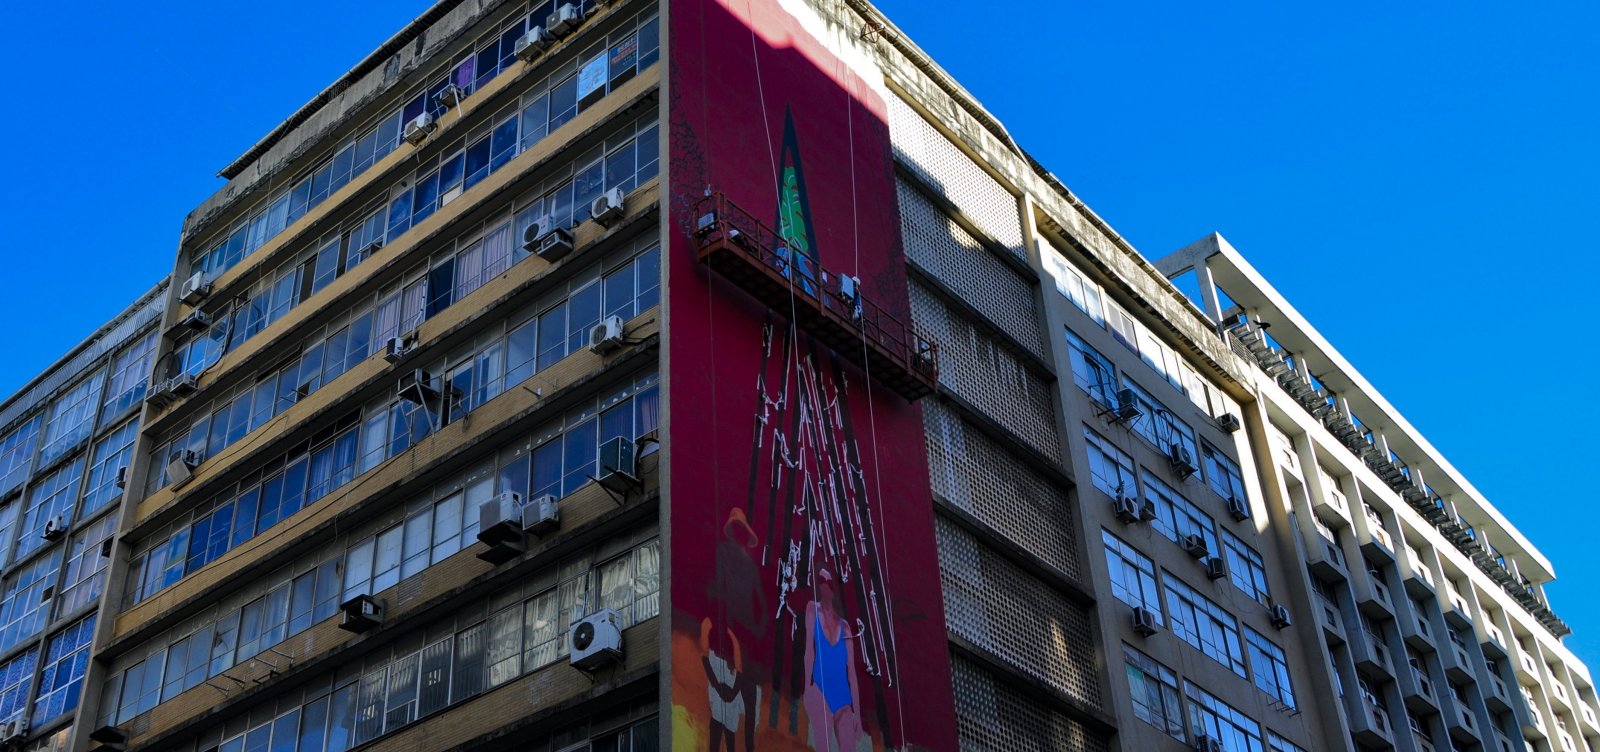 "Tenho vertigem de altura", diz artista que pintou mural de 26 metros no Comércio